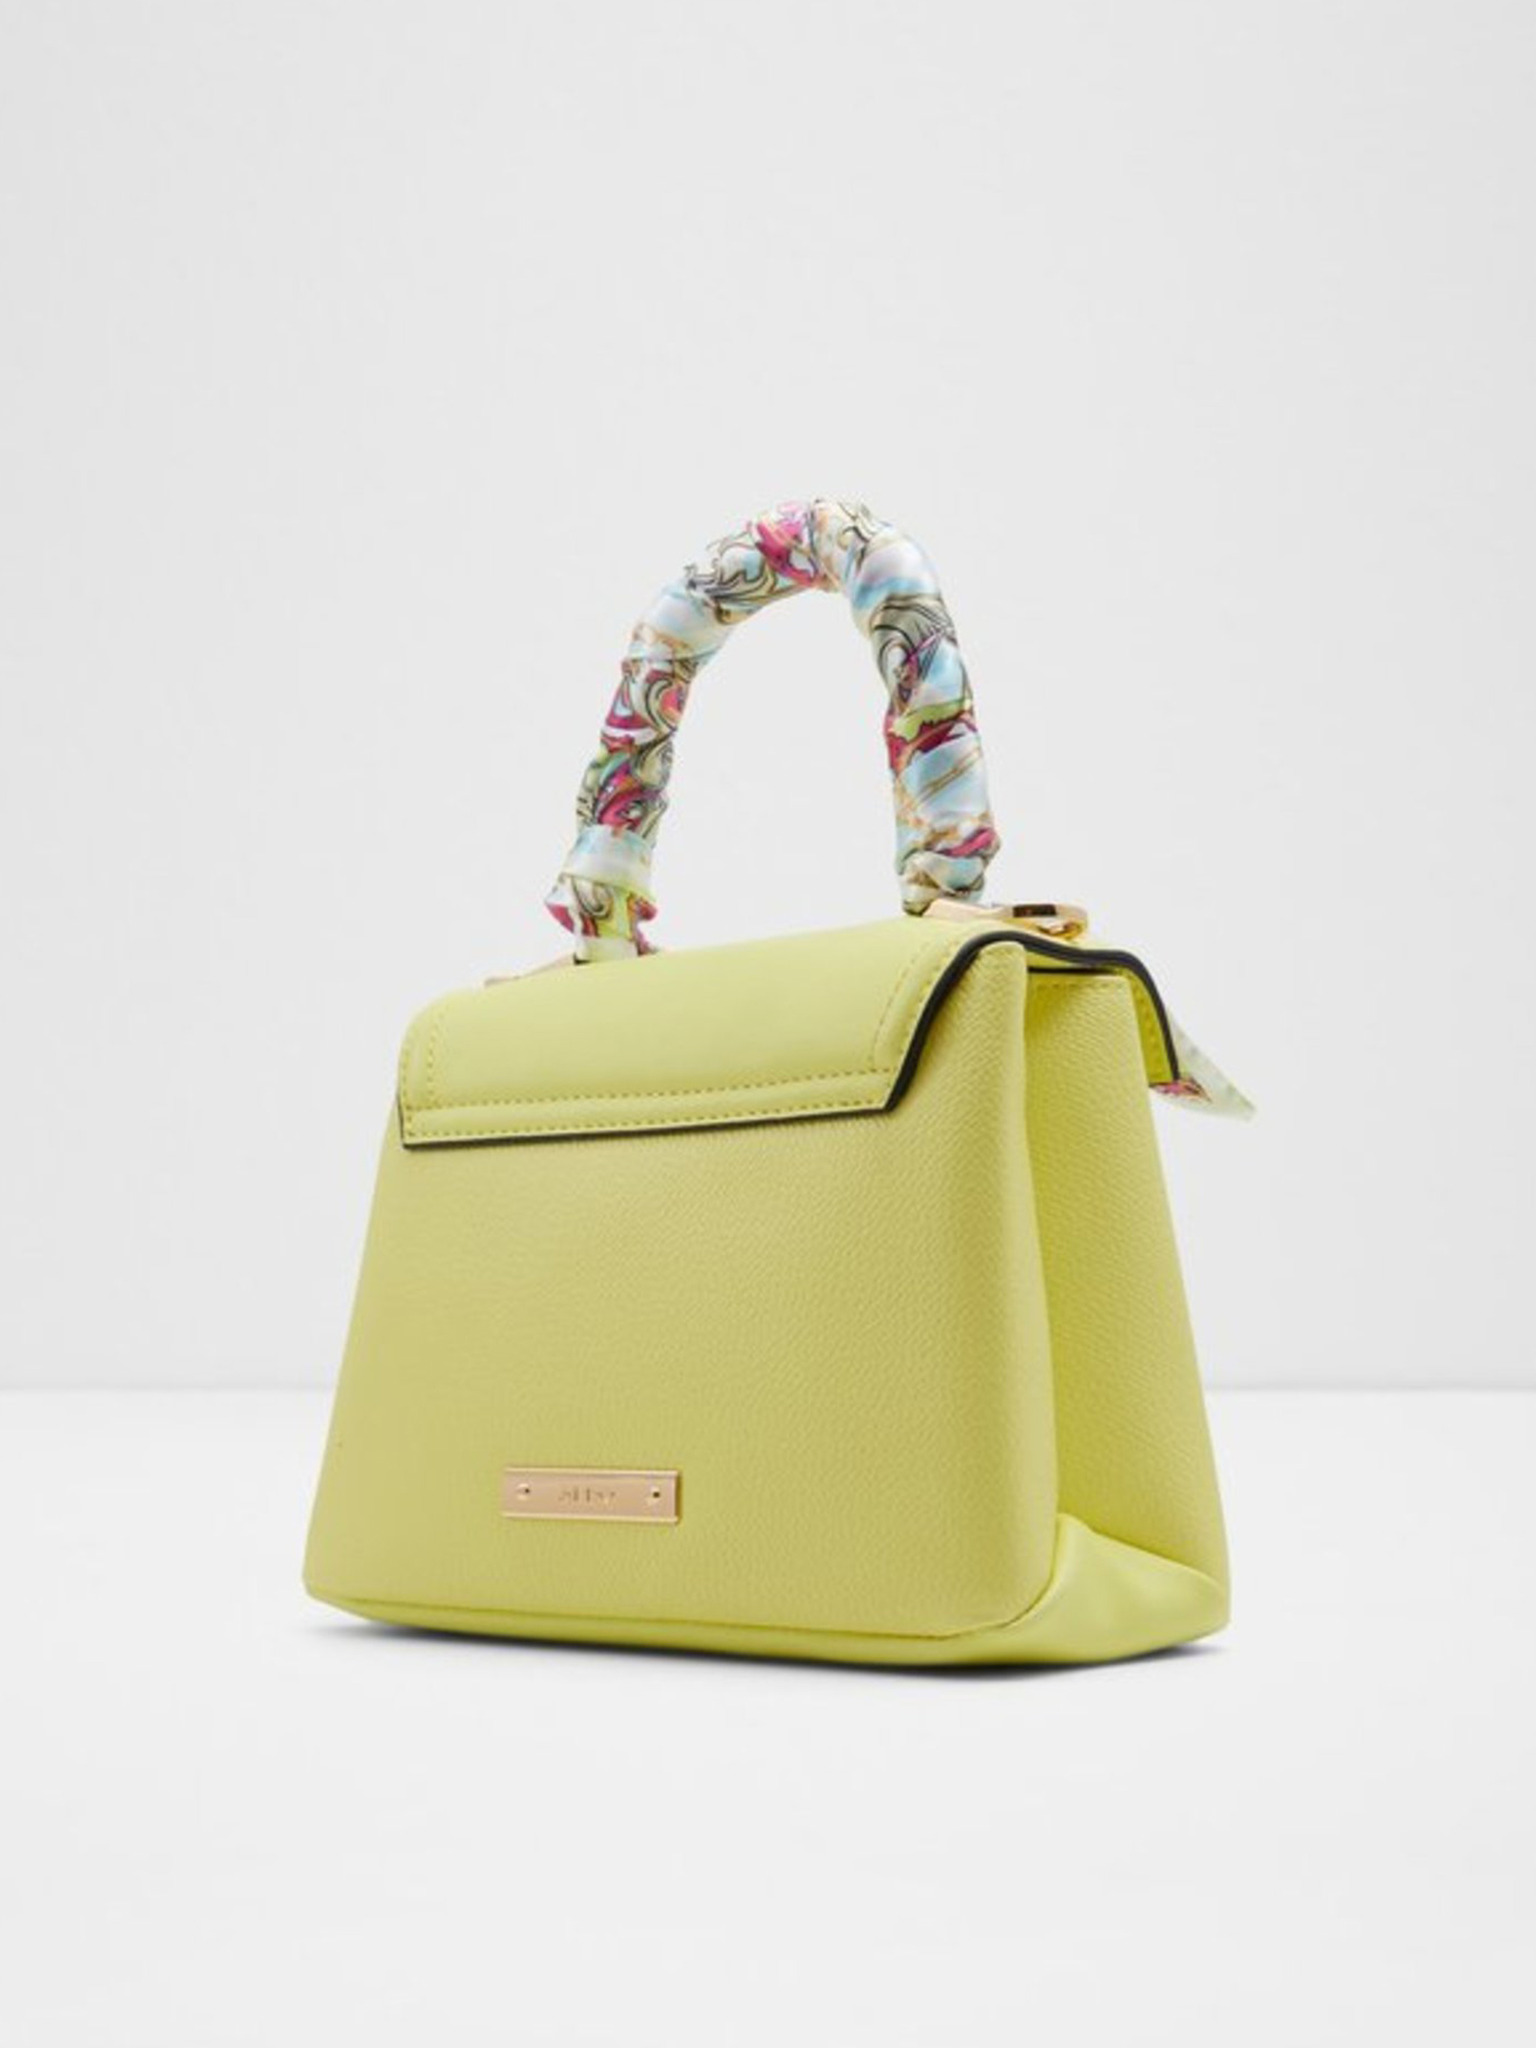 ALDO Catenax Bright Multi One Size: Handbags: Amazon.com